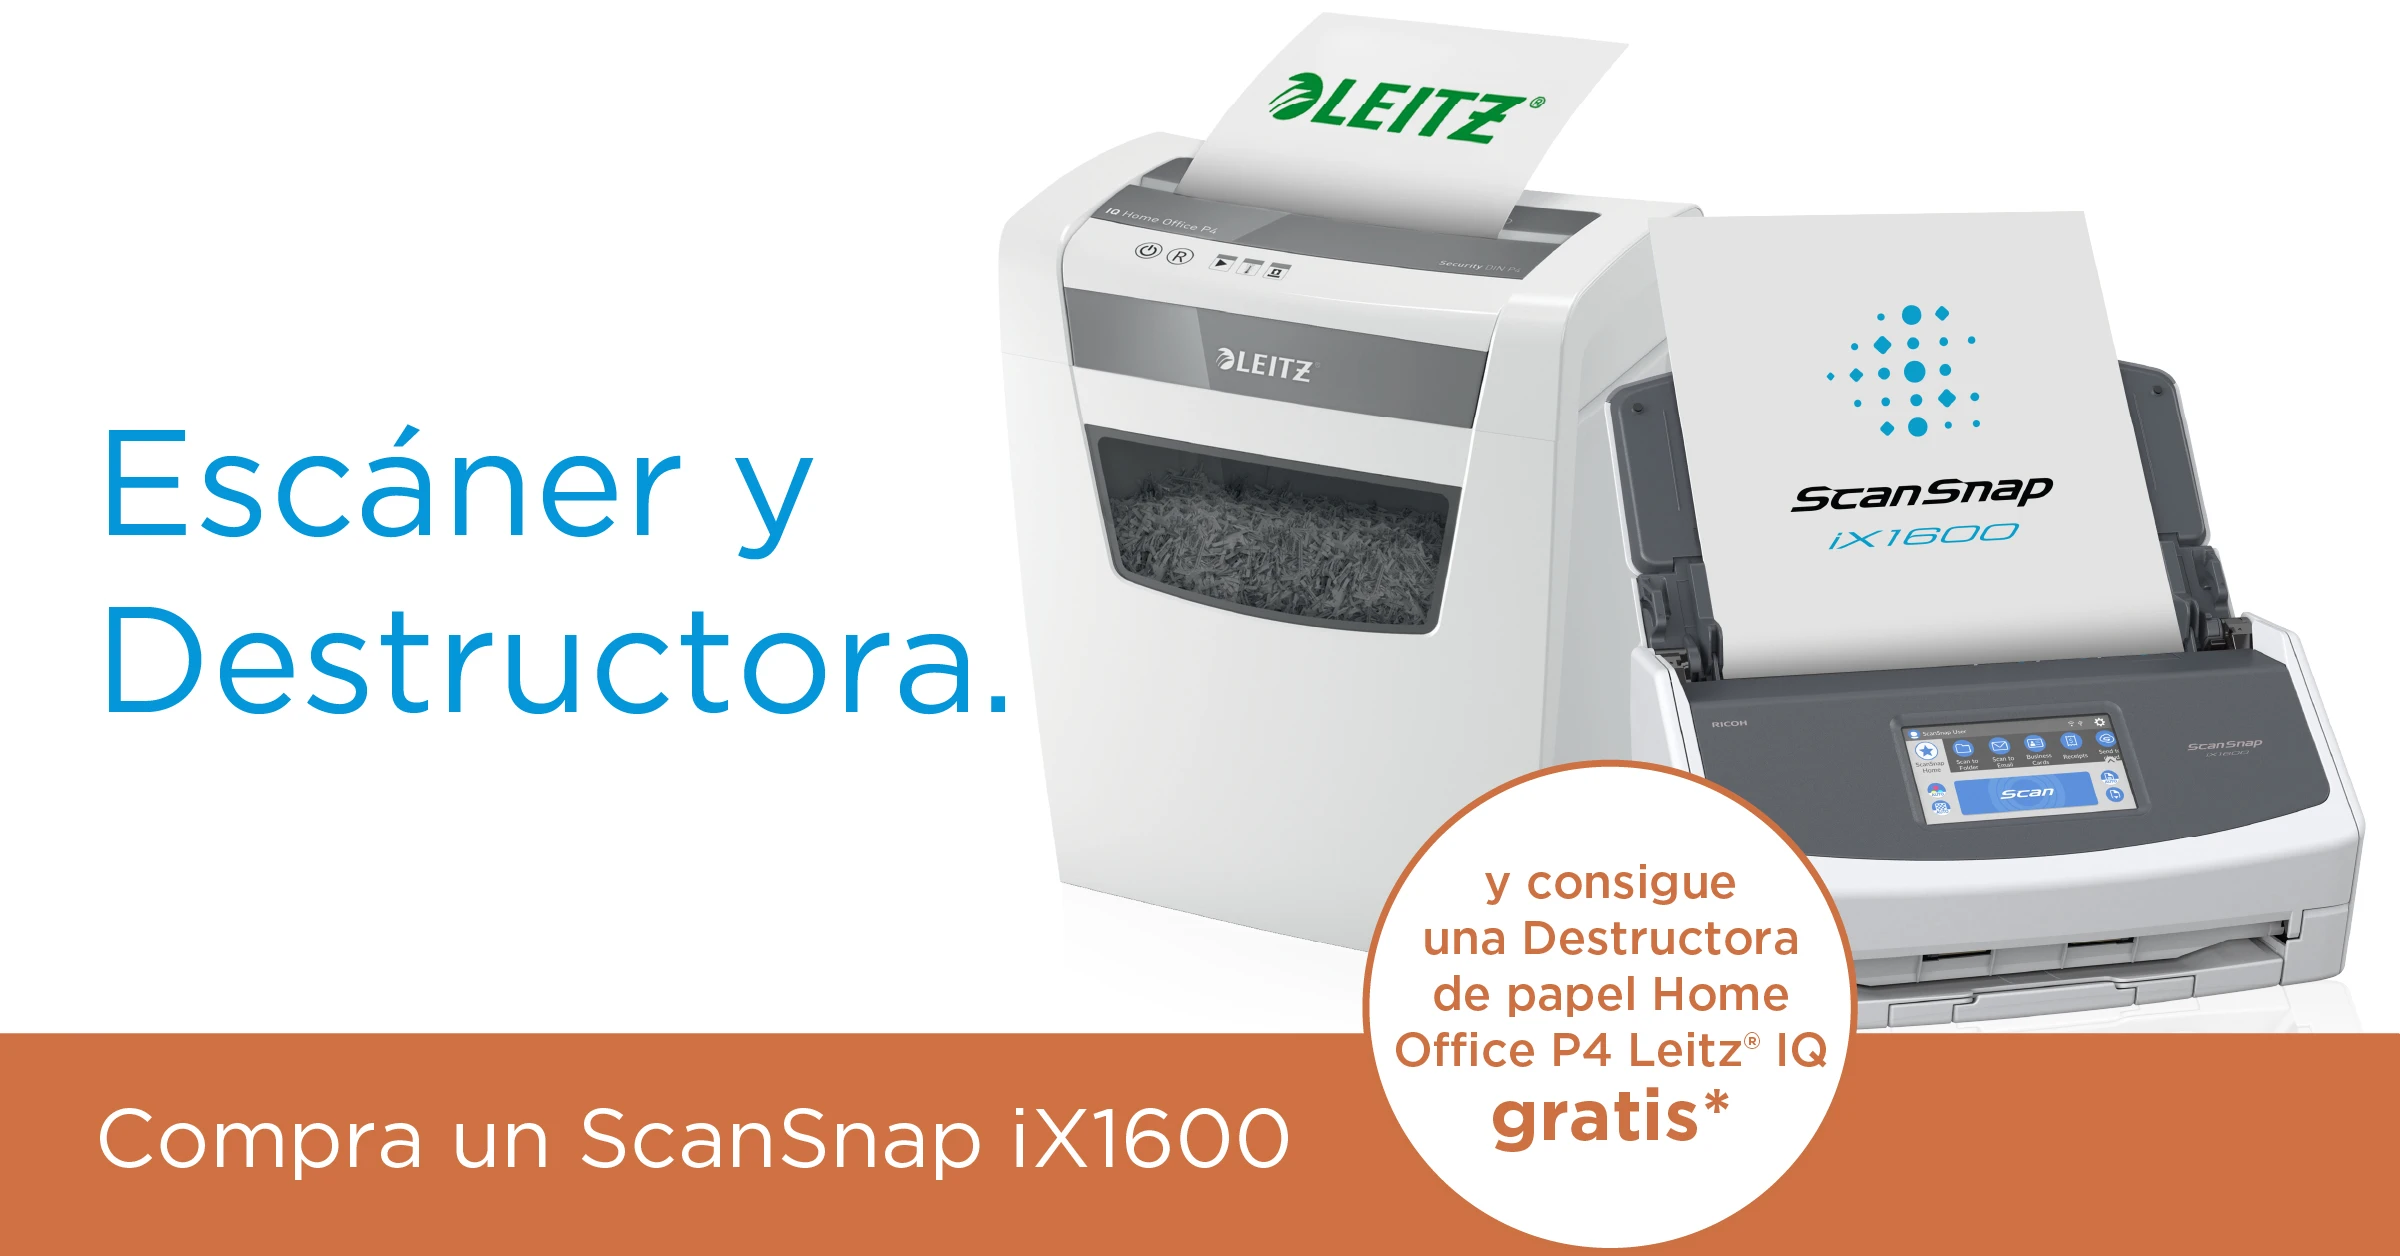 Escáner ScanSnap iX1600 con promoción de Destructora gratis